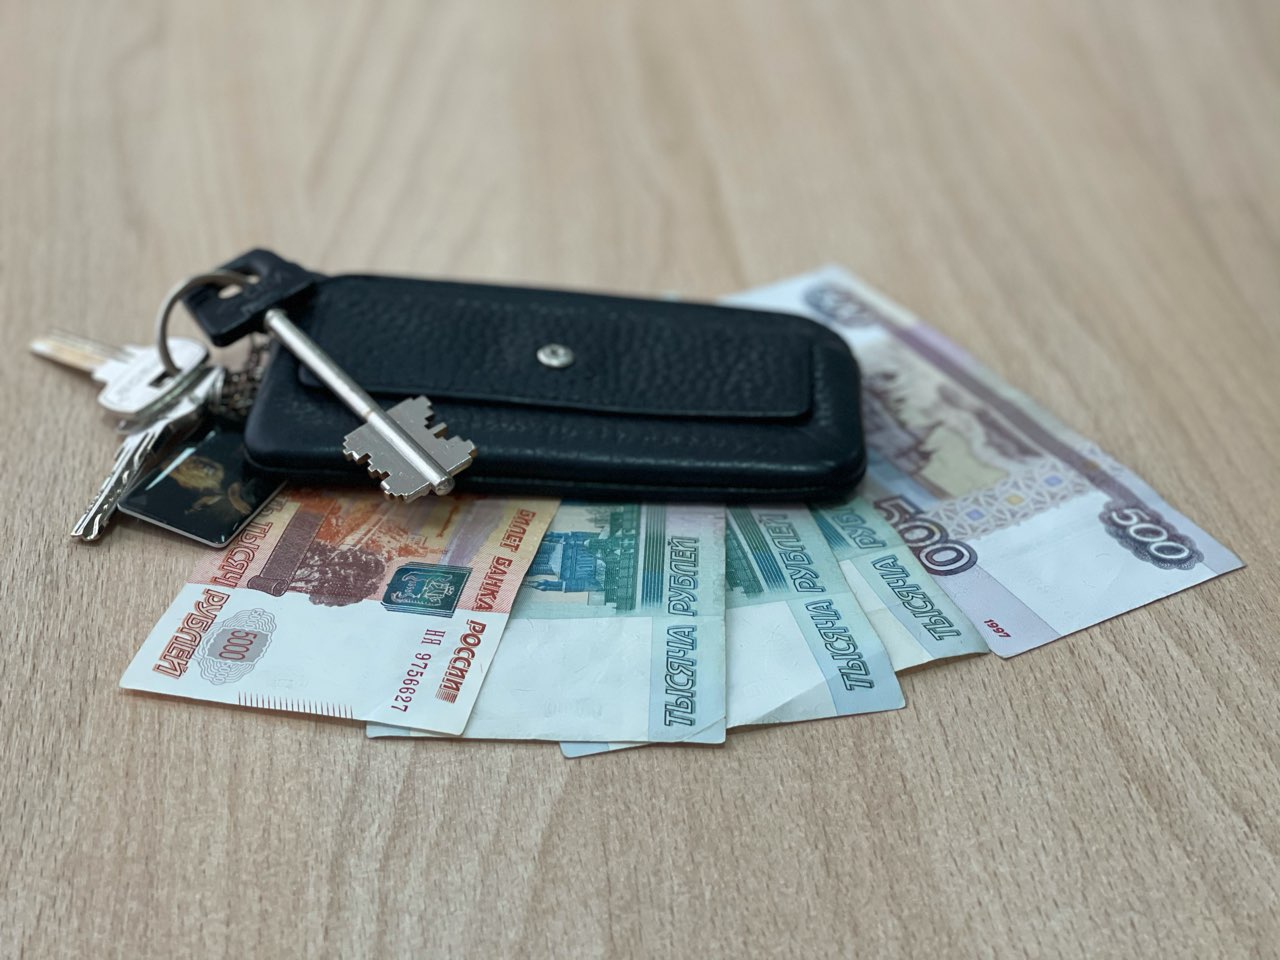 5423 ипотечных кредита оформили в Нижегородской области в июне 2021 года - фото 1